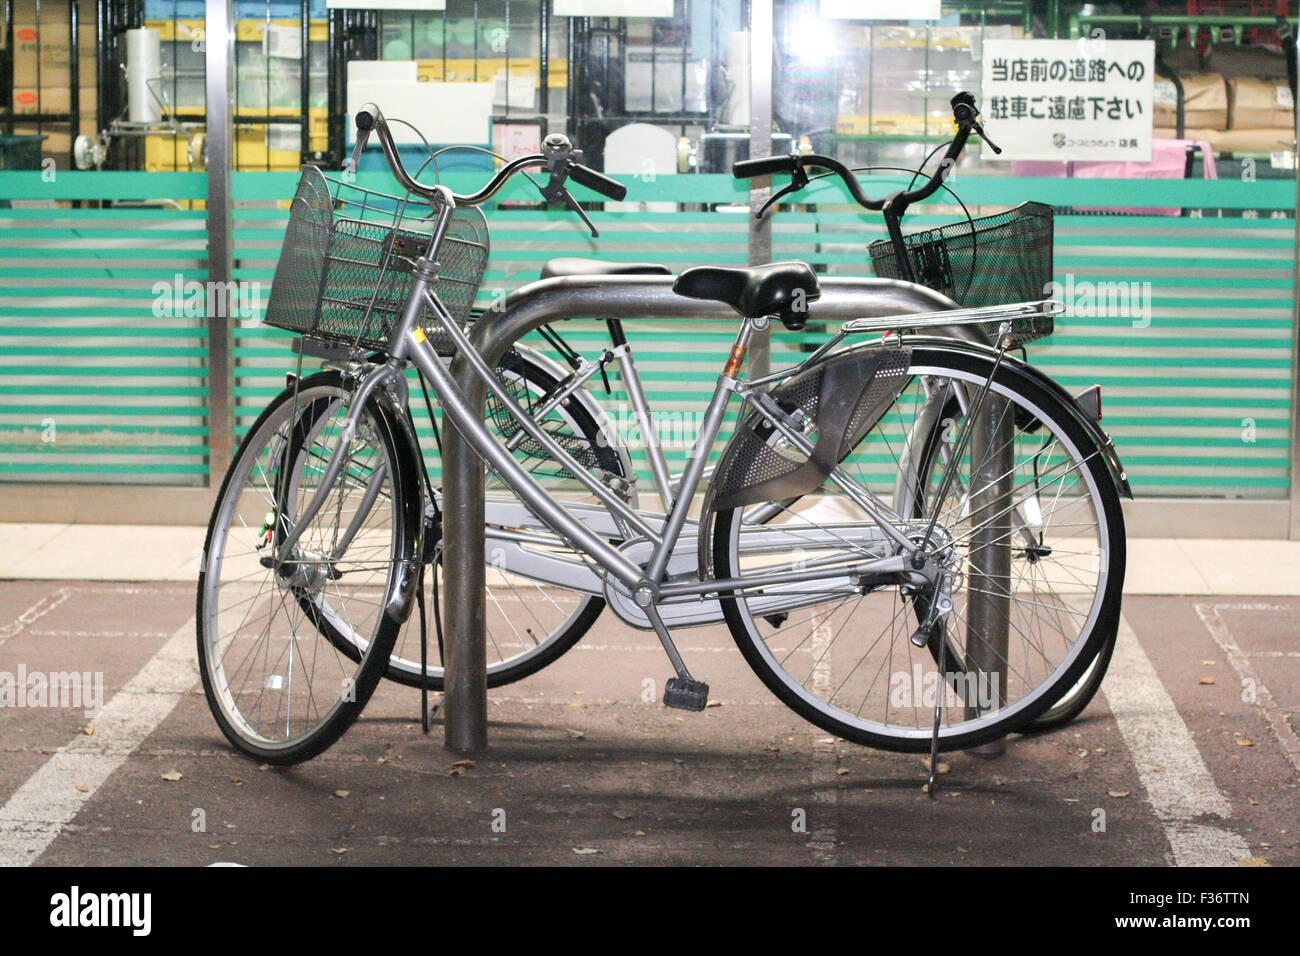 Deux d'argent les vélos bike mamachari garé Banque D'Images